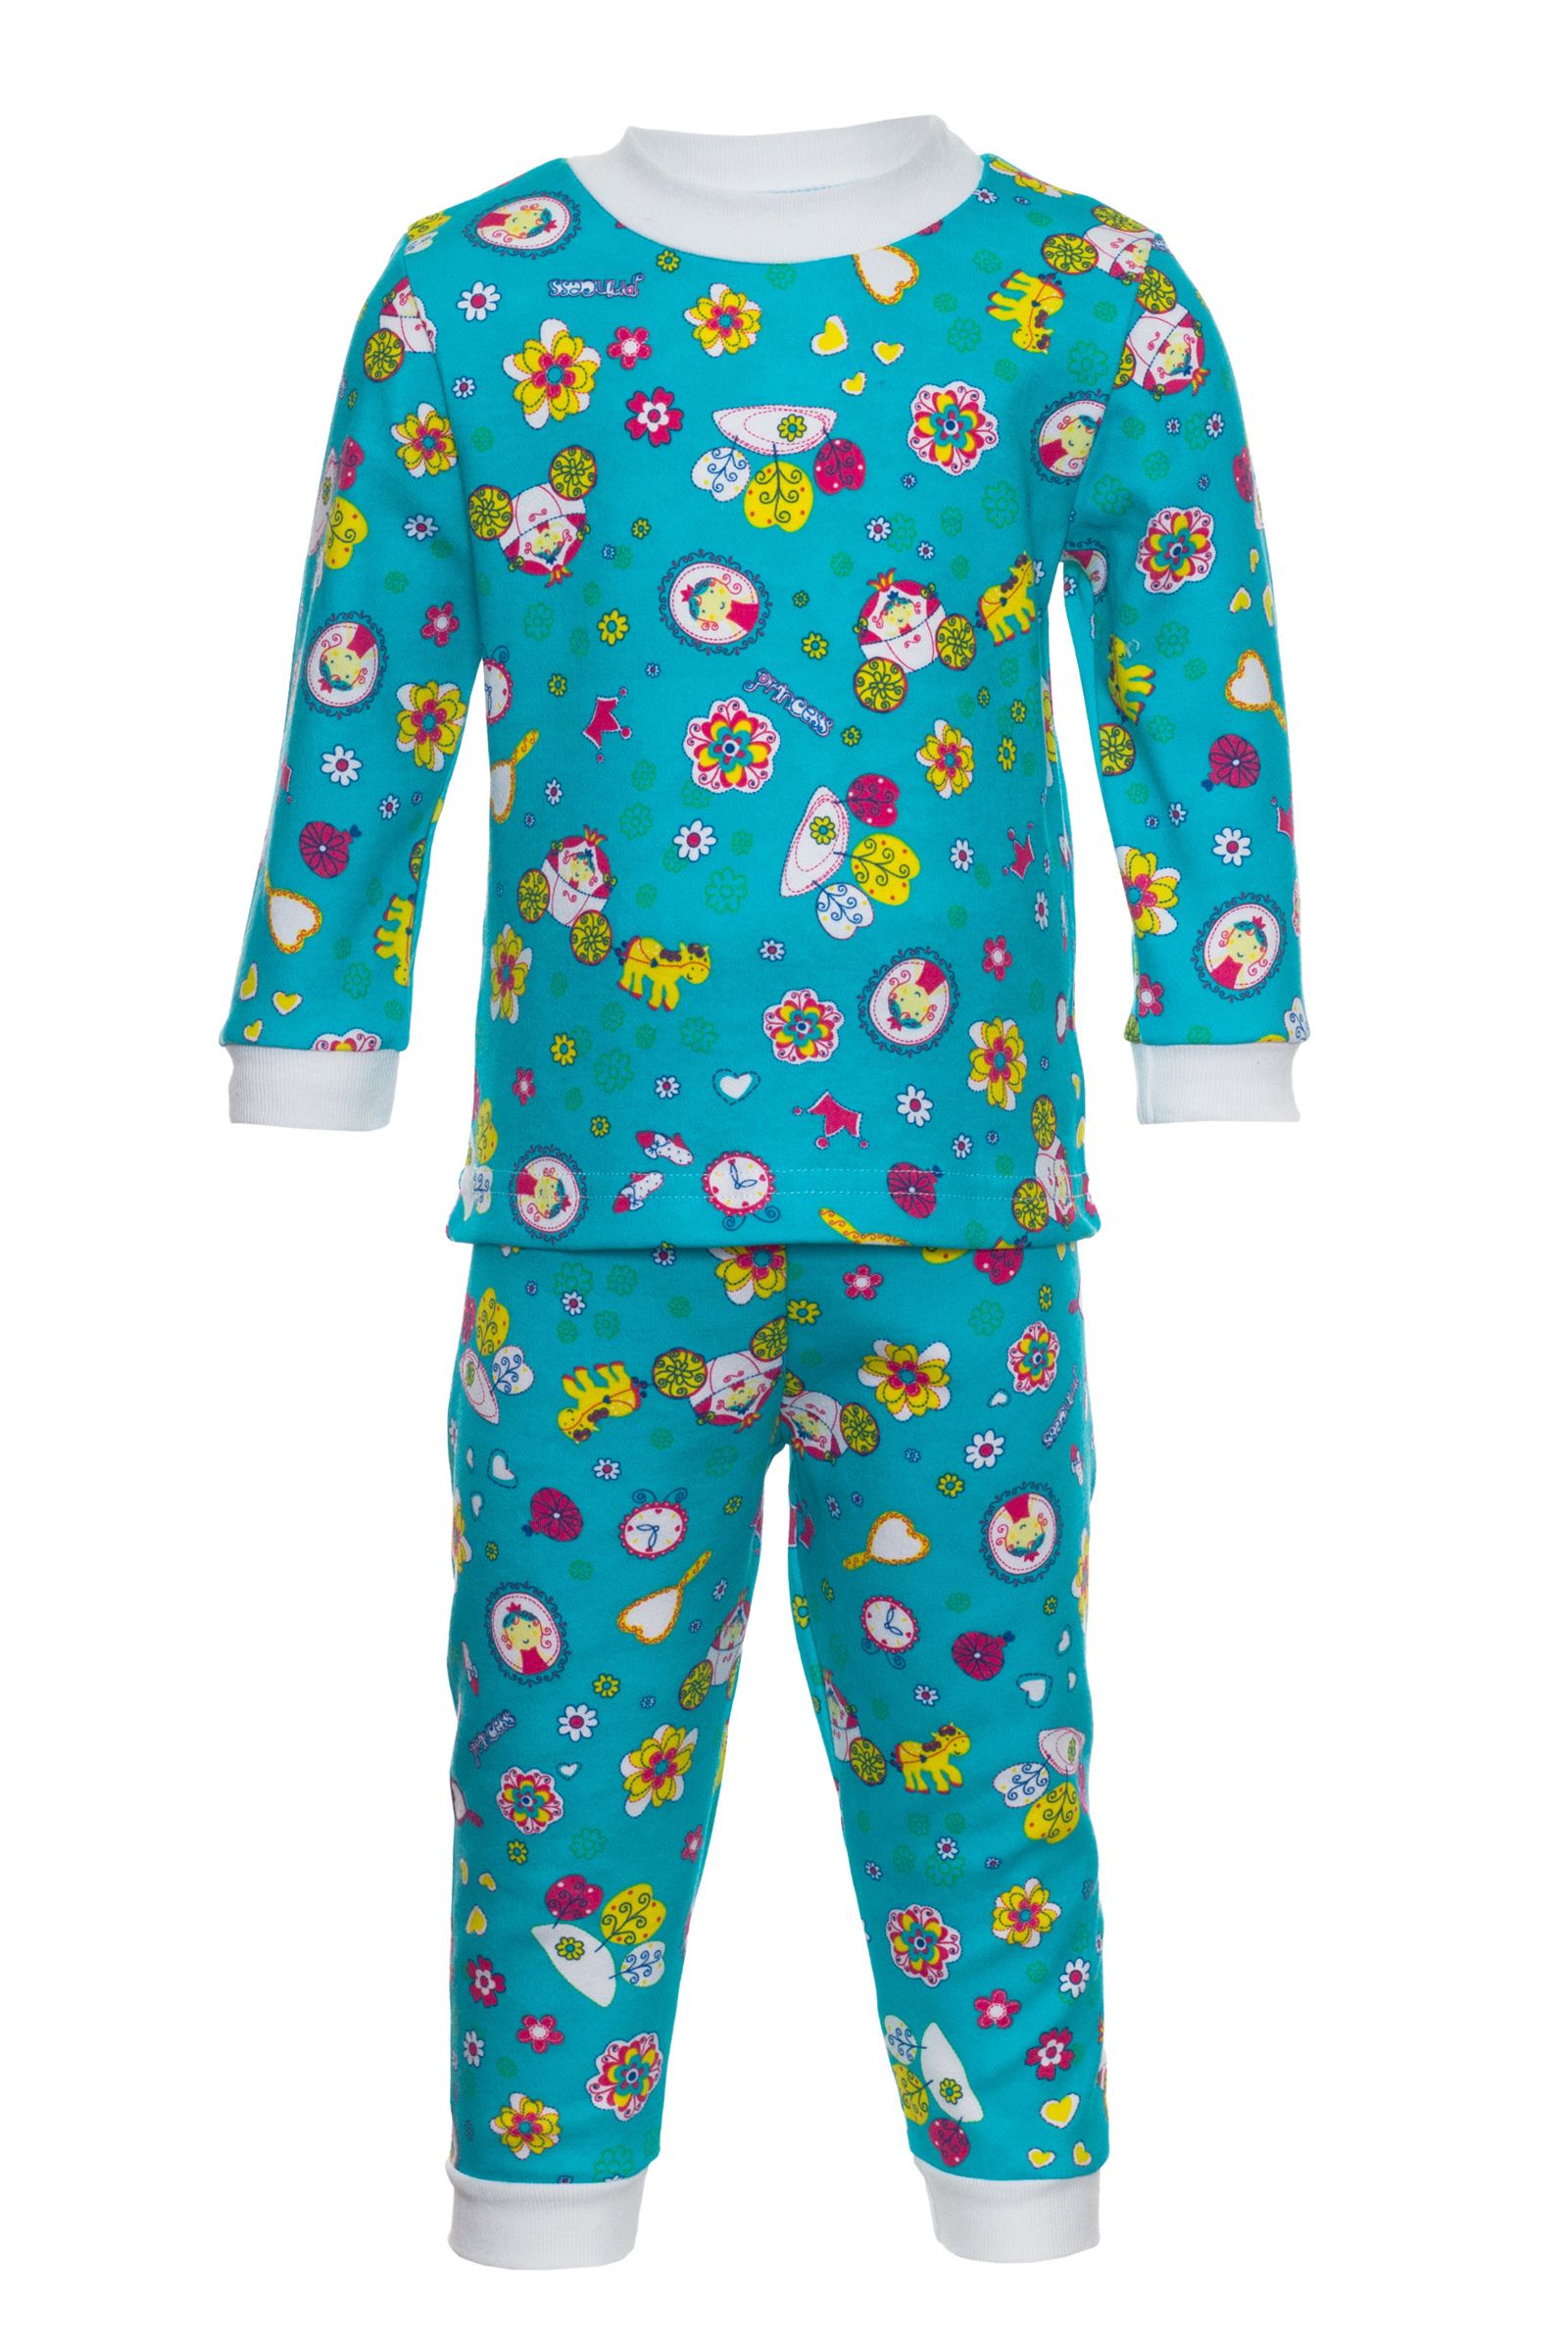 Пижама-ПЖ01-286п оптом от производителя детской одежды 'Алёна'